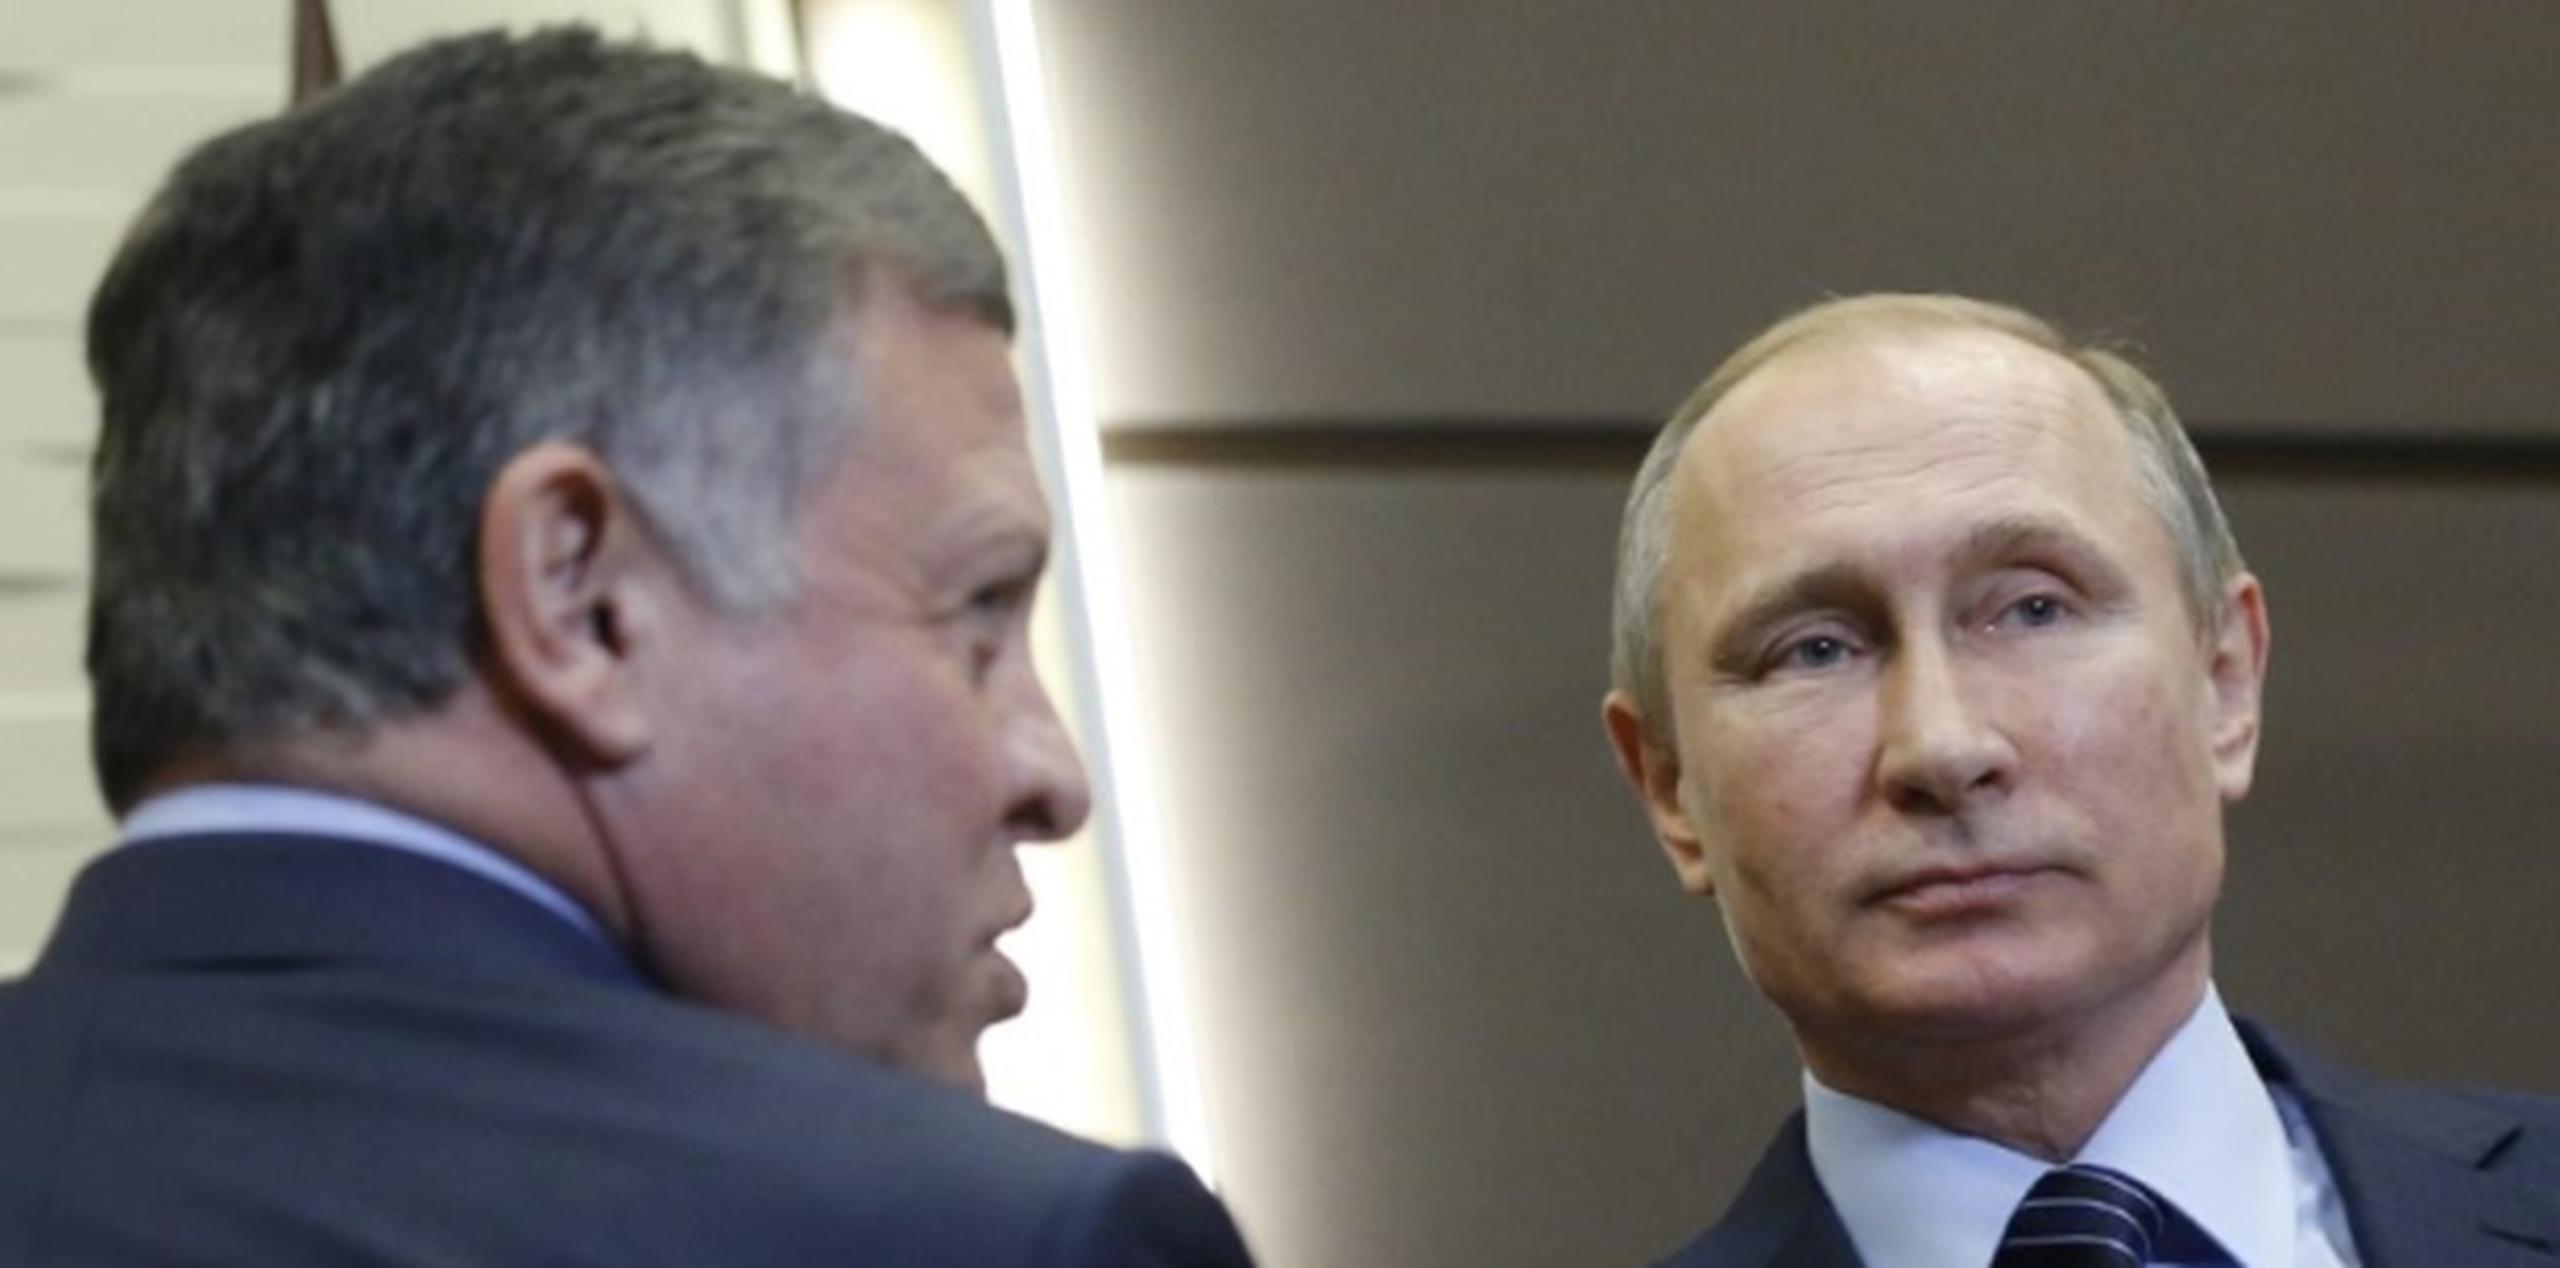 "Nunca permitiremos que se cometan crímenes como el de hoy", dijo Putin, aquí con  rey Abdalá II de Jordania de Jordania. (AFP)